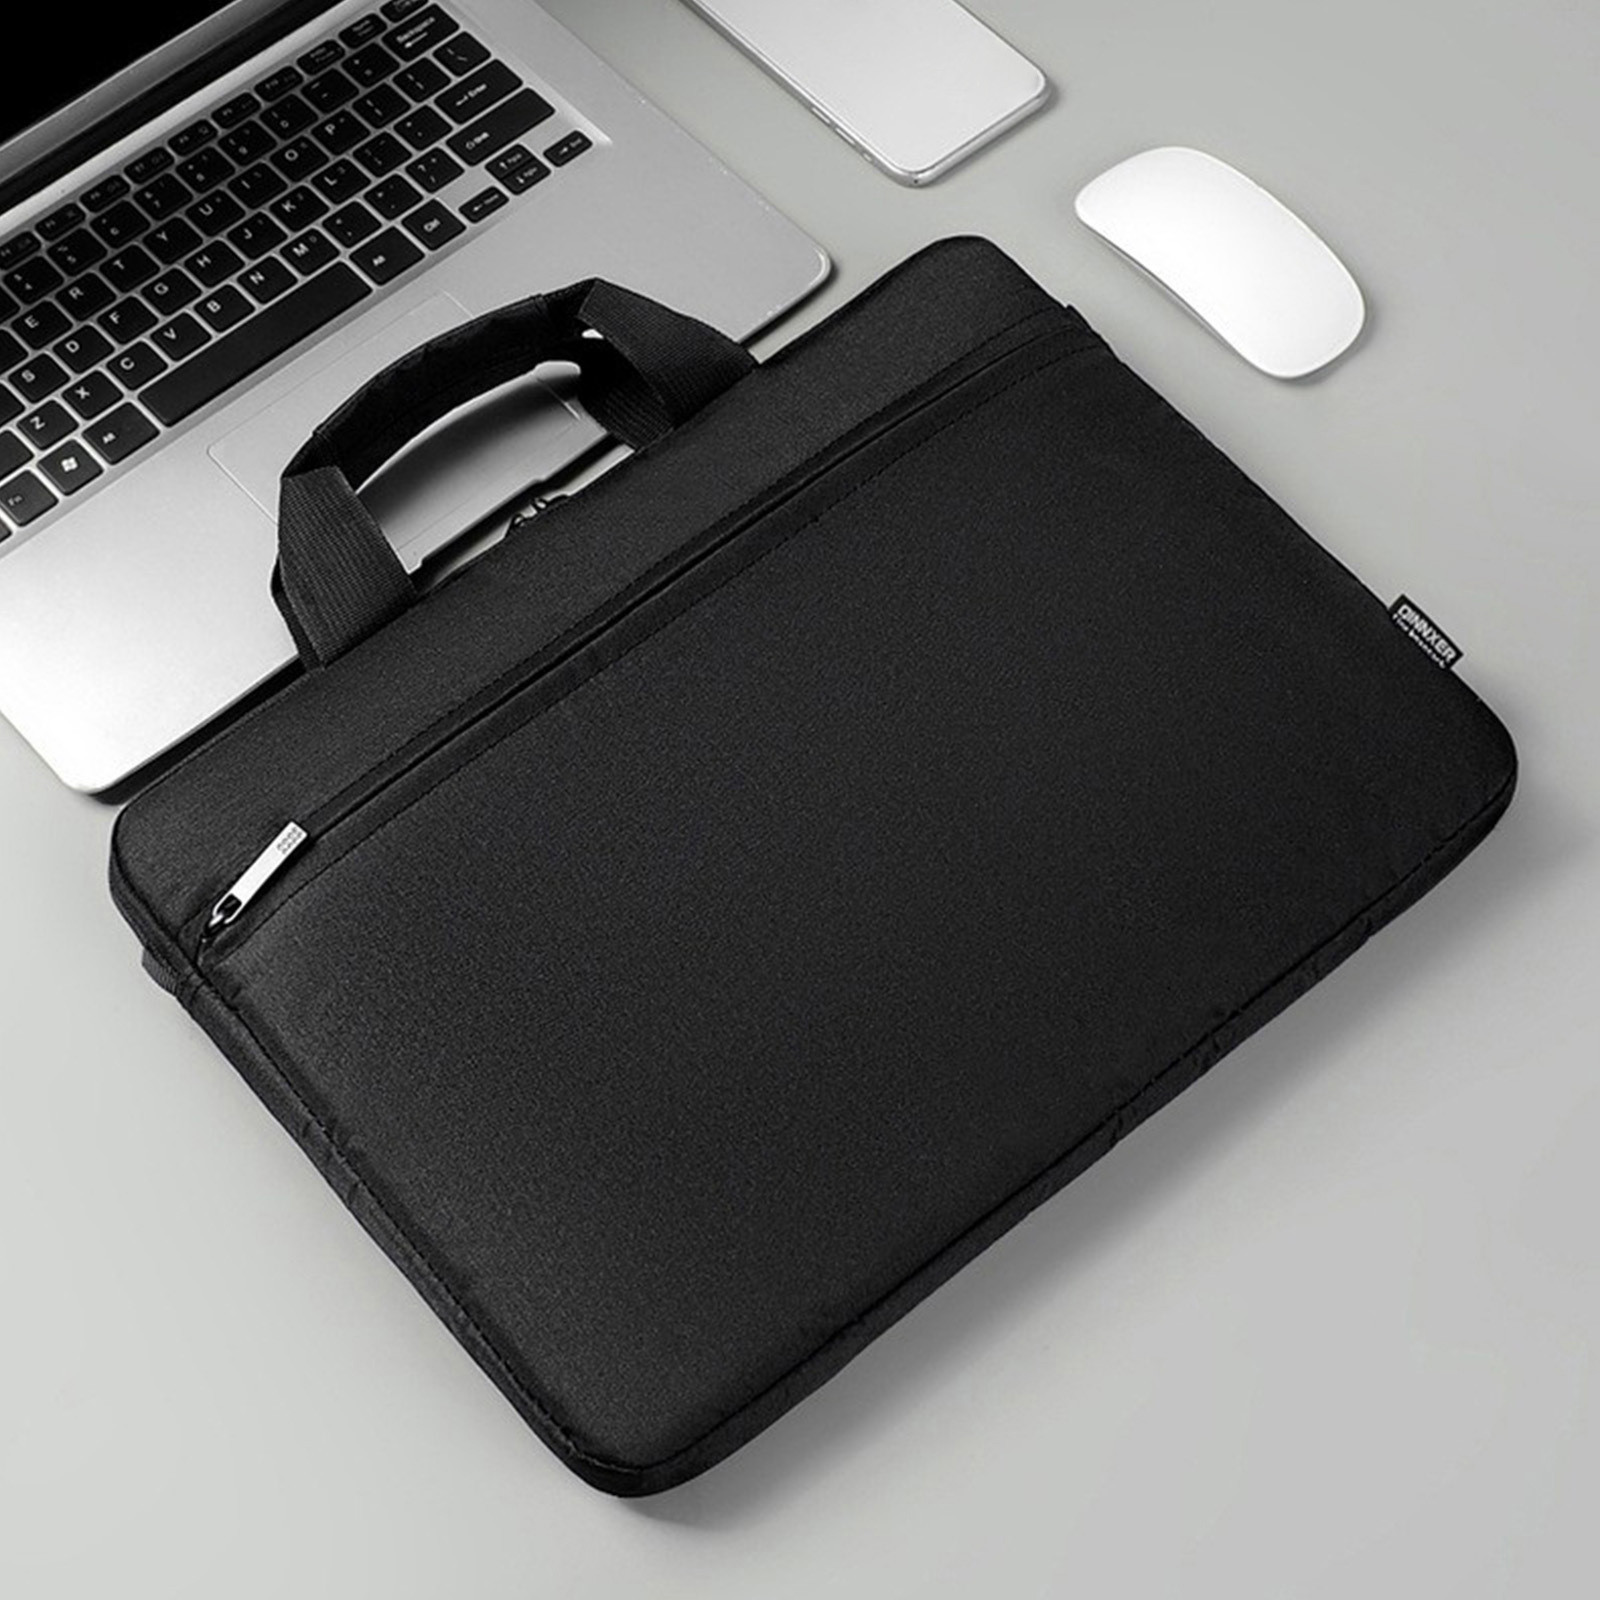 Jacenvly Laptop Bag 15.6 Inch for Women Men Shoulder Bag Waterproof ...